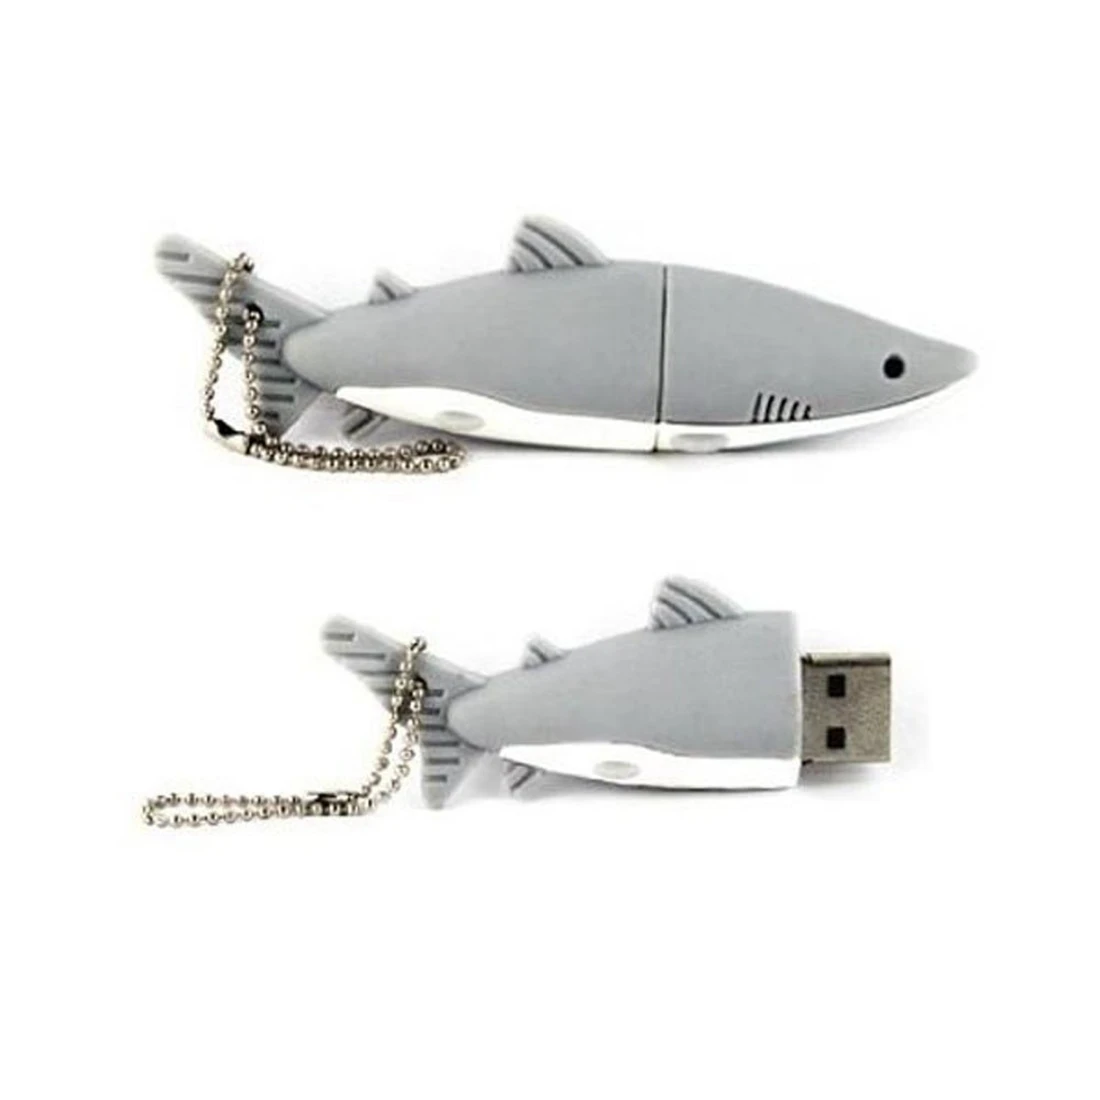 Фото USB 2 0 в форме акулы 8 Гб | Компьютеры и офис